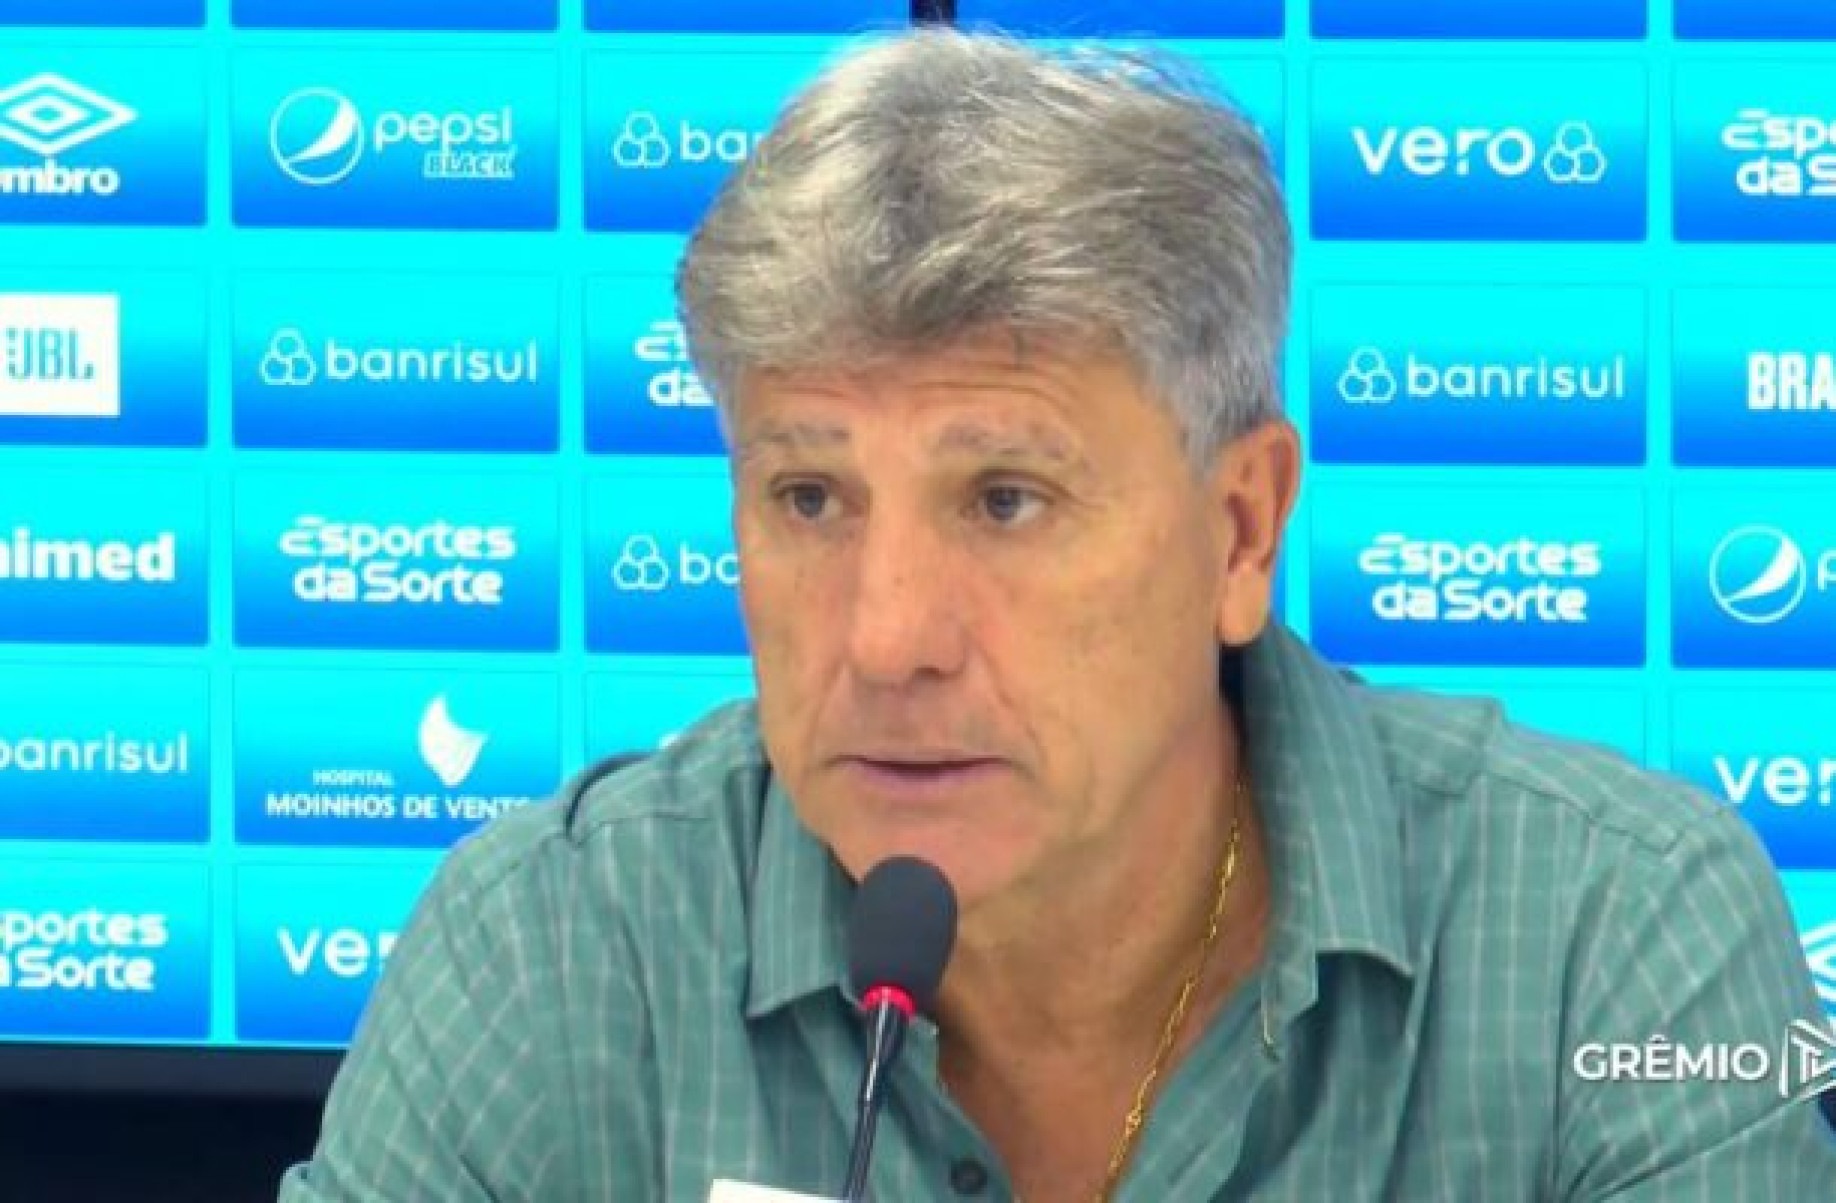 Renato Gaúcho defende atacante do Grêmio em discussão com jornalista